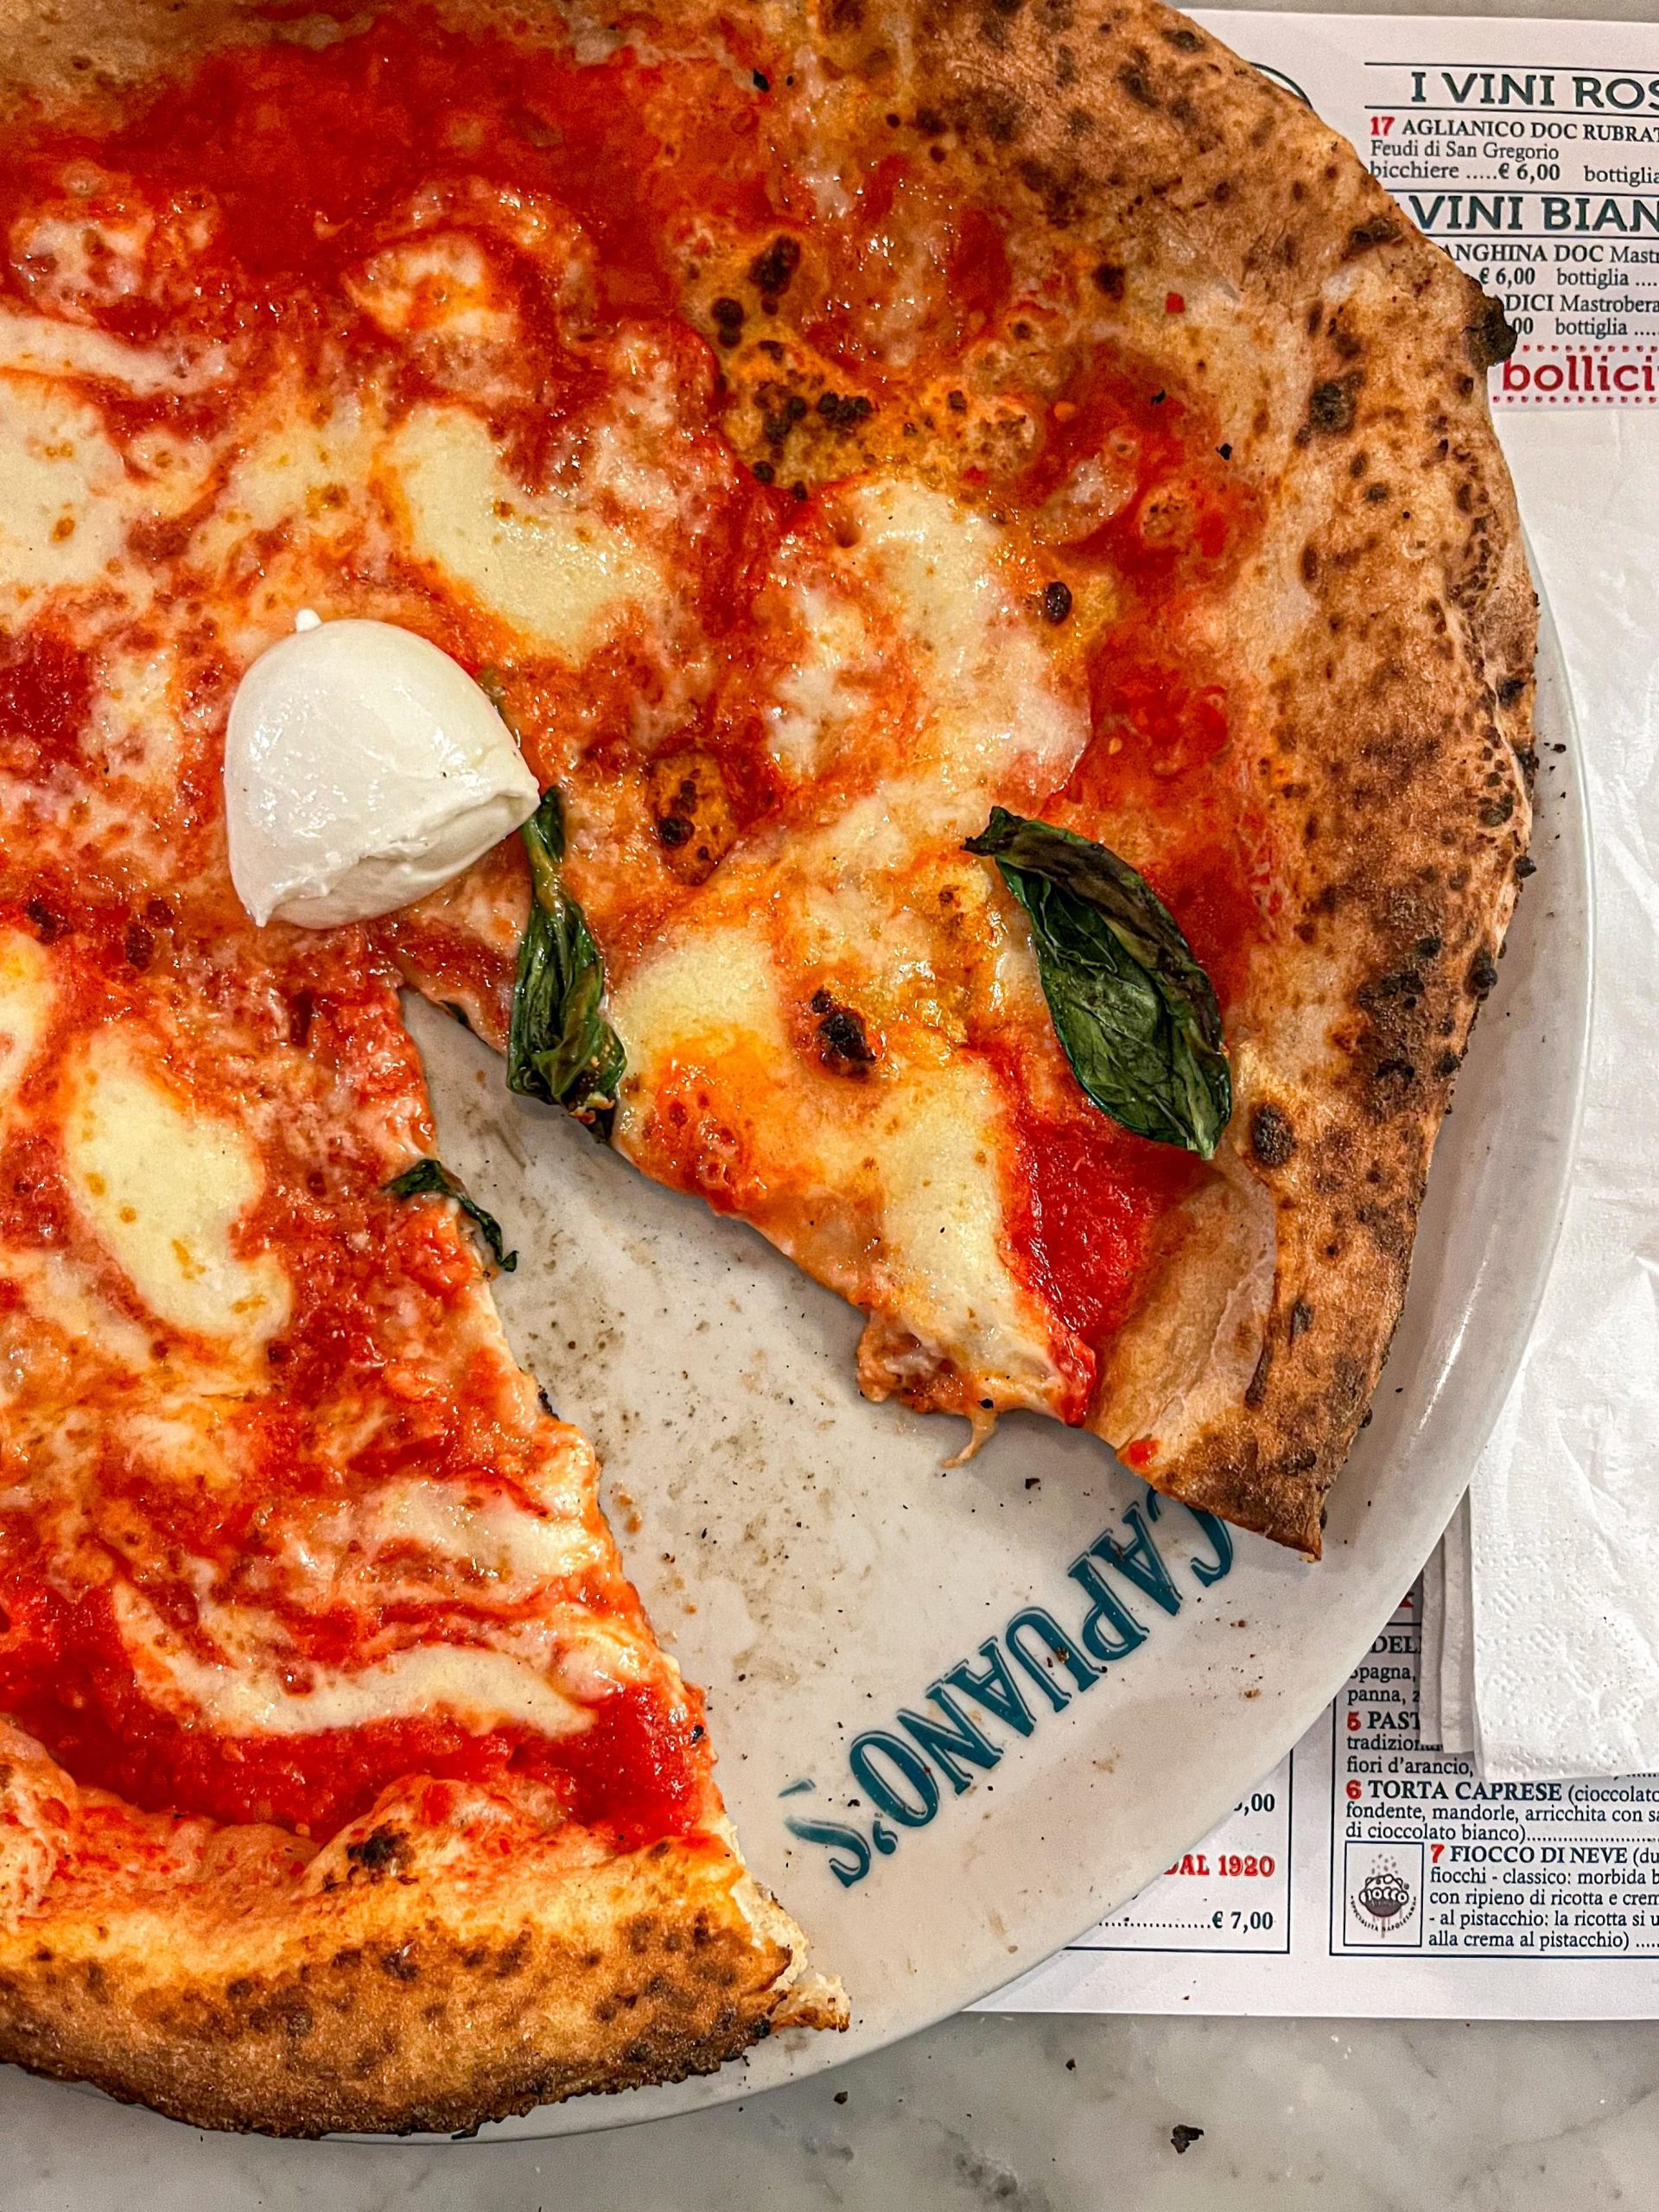 Scopri di più sull'articolo Capuano’s Milano, la pizza napoletana 7.0